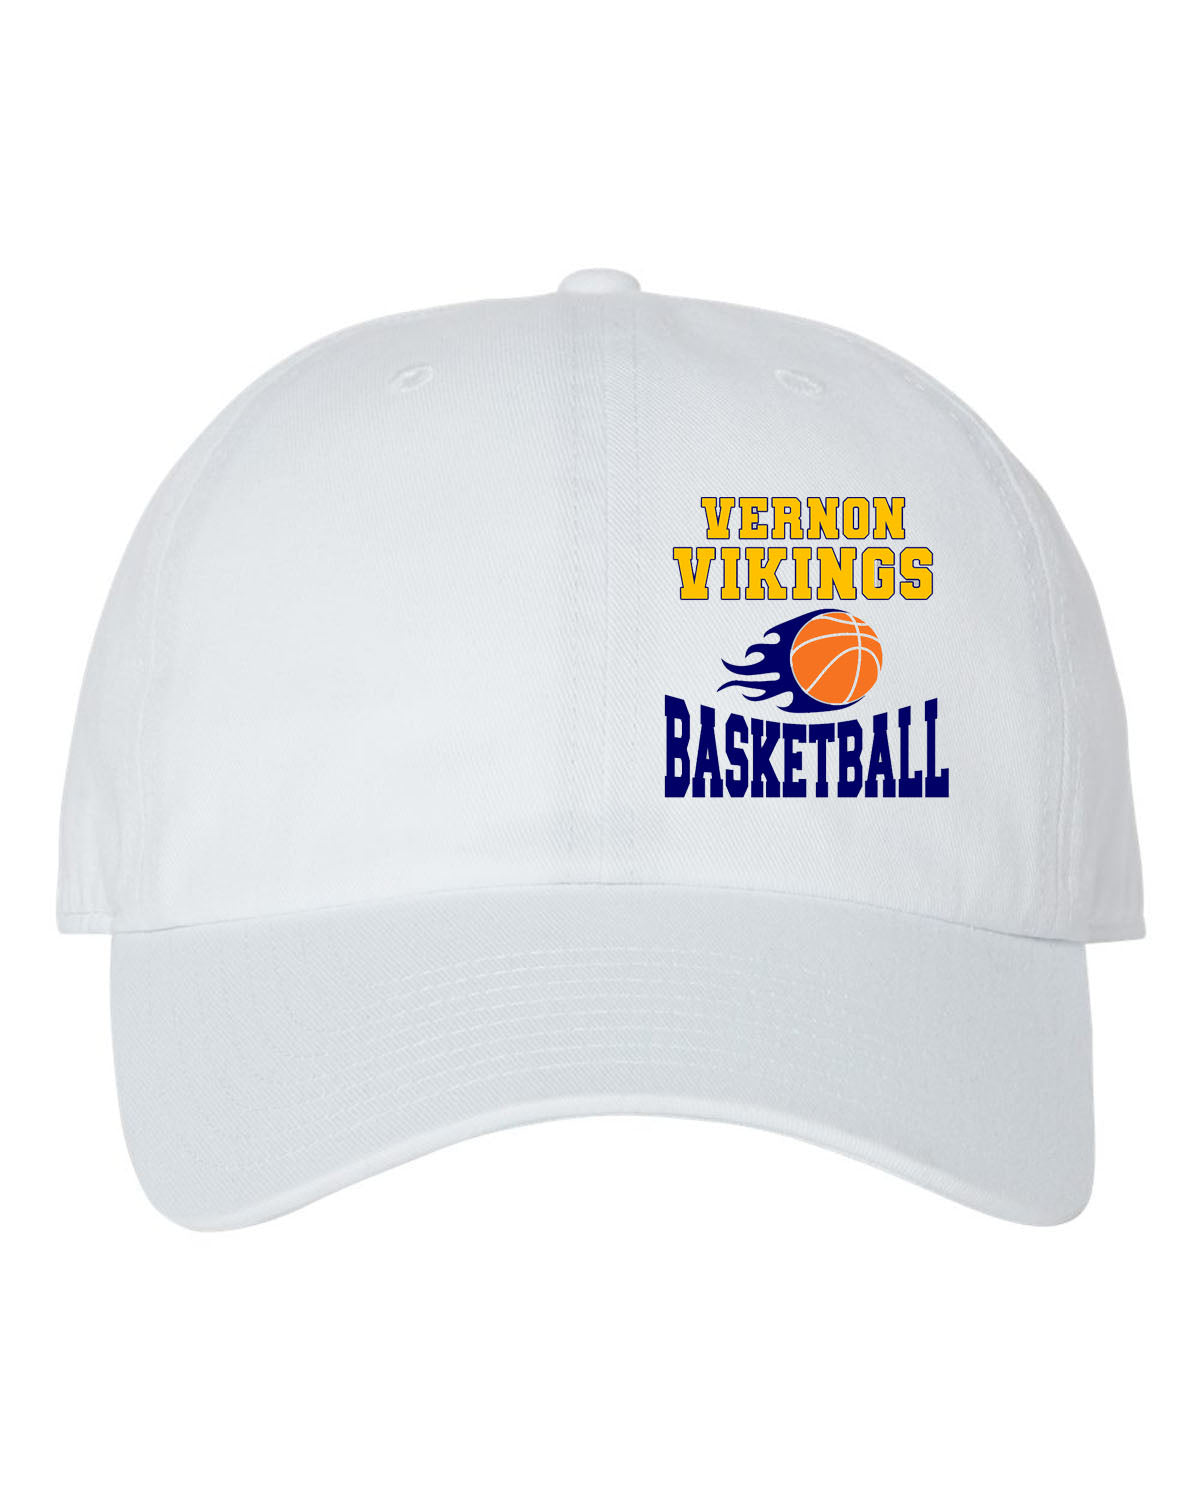 Vikings Basketball Design 4 Trucker Hat